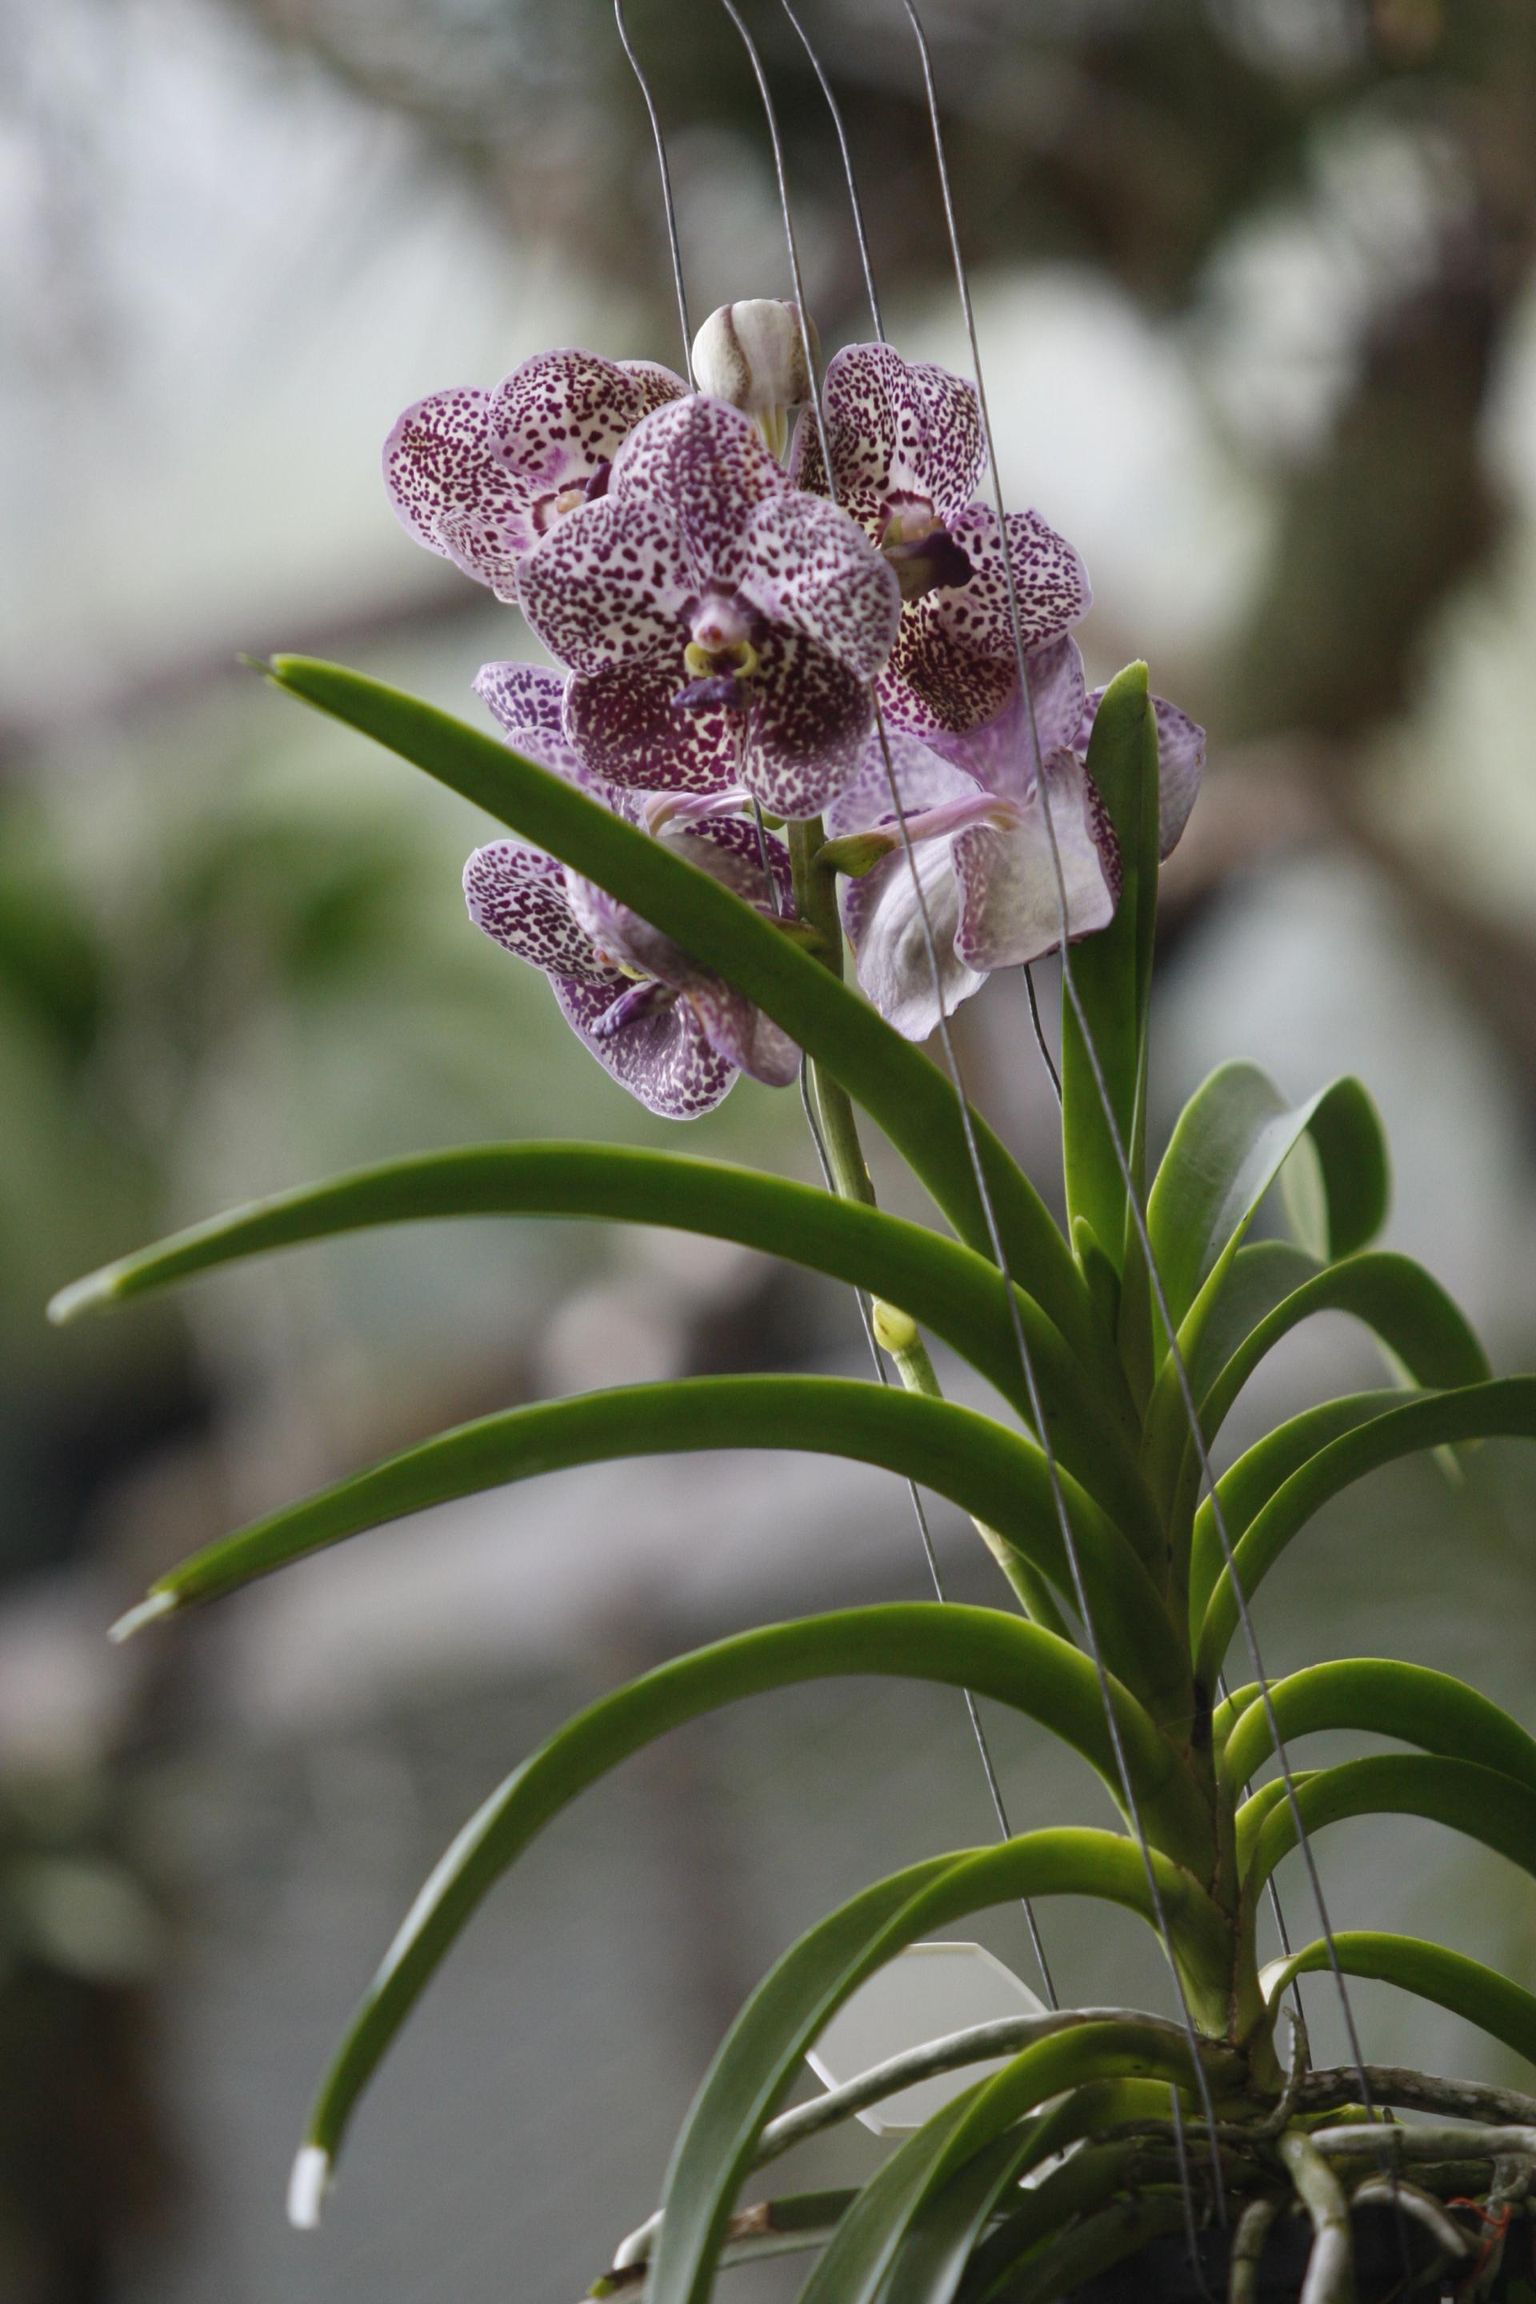 Orhidee «Vanda» on ilus, kuid ei sobi keskküttega korterisse, sest nõuab niisket keskkonda.
 